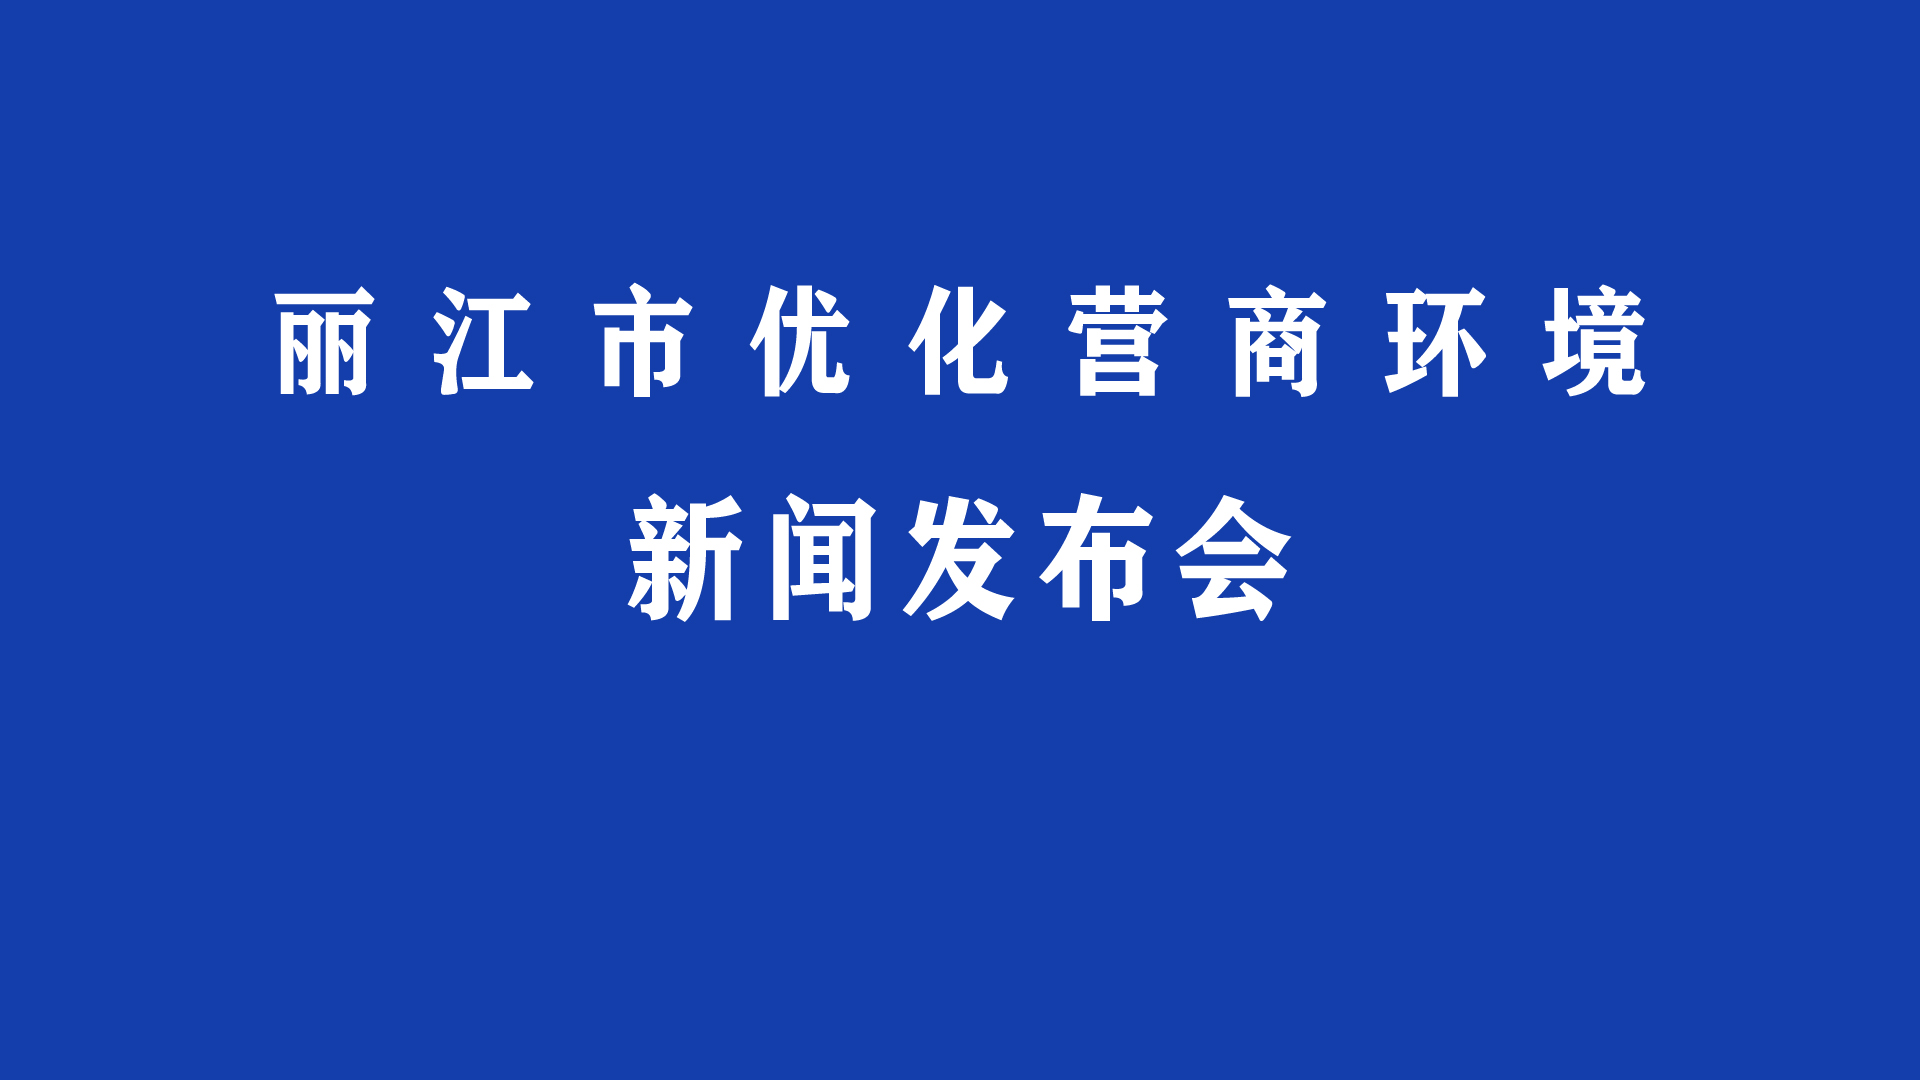 丽江市优化营商环境新闻发布会（第二场）